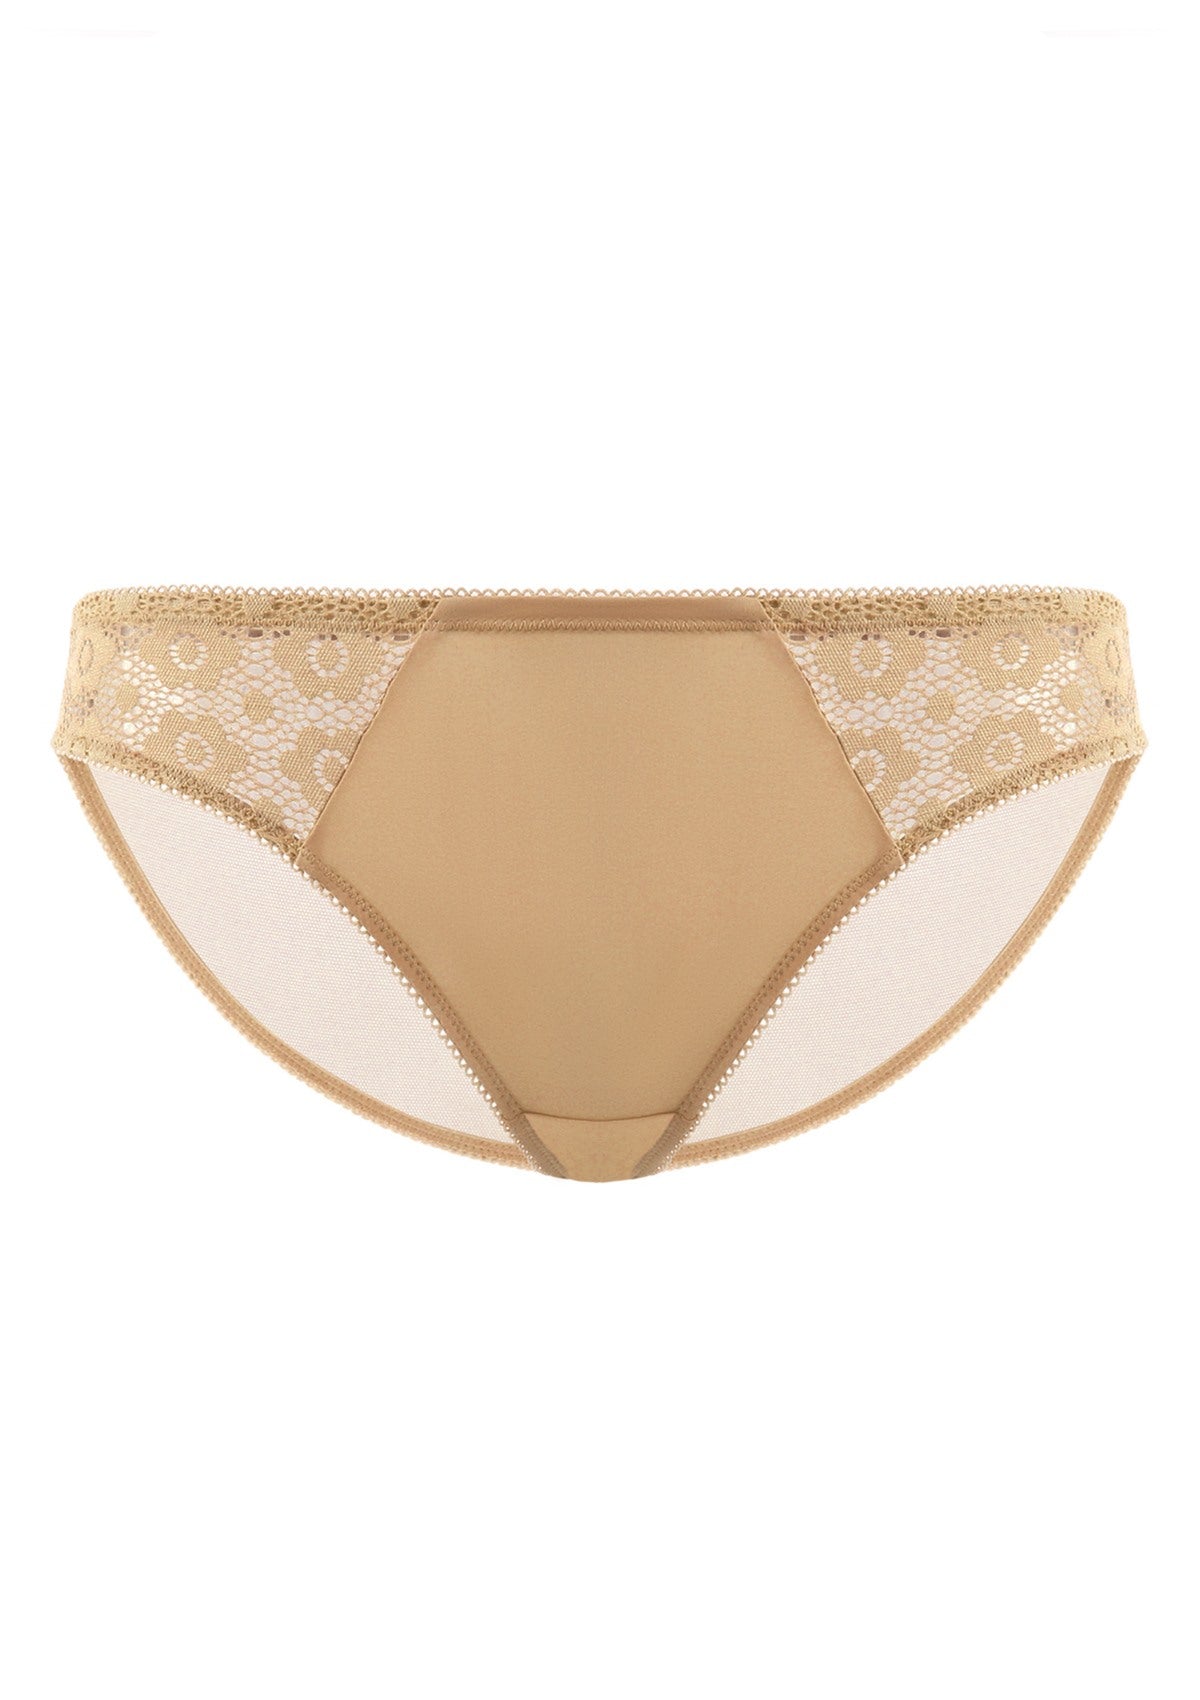 HSIA Serena Comfortable Trendy Lace Trim Bikini Underwear - M / Champagne